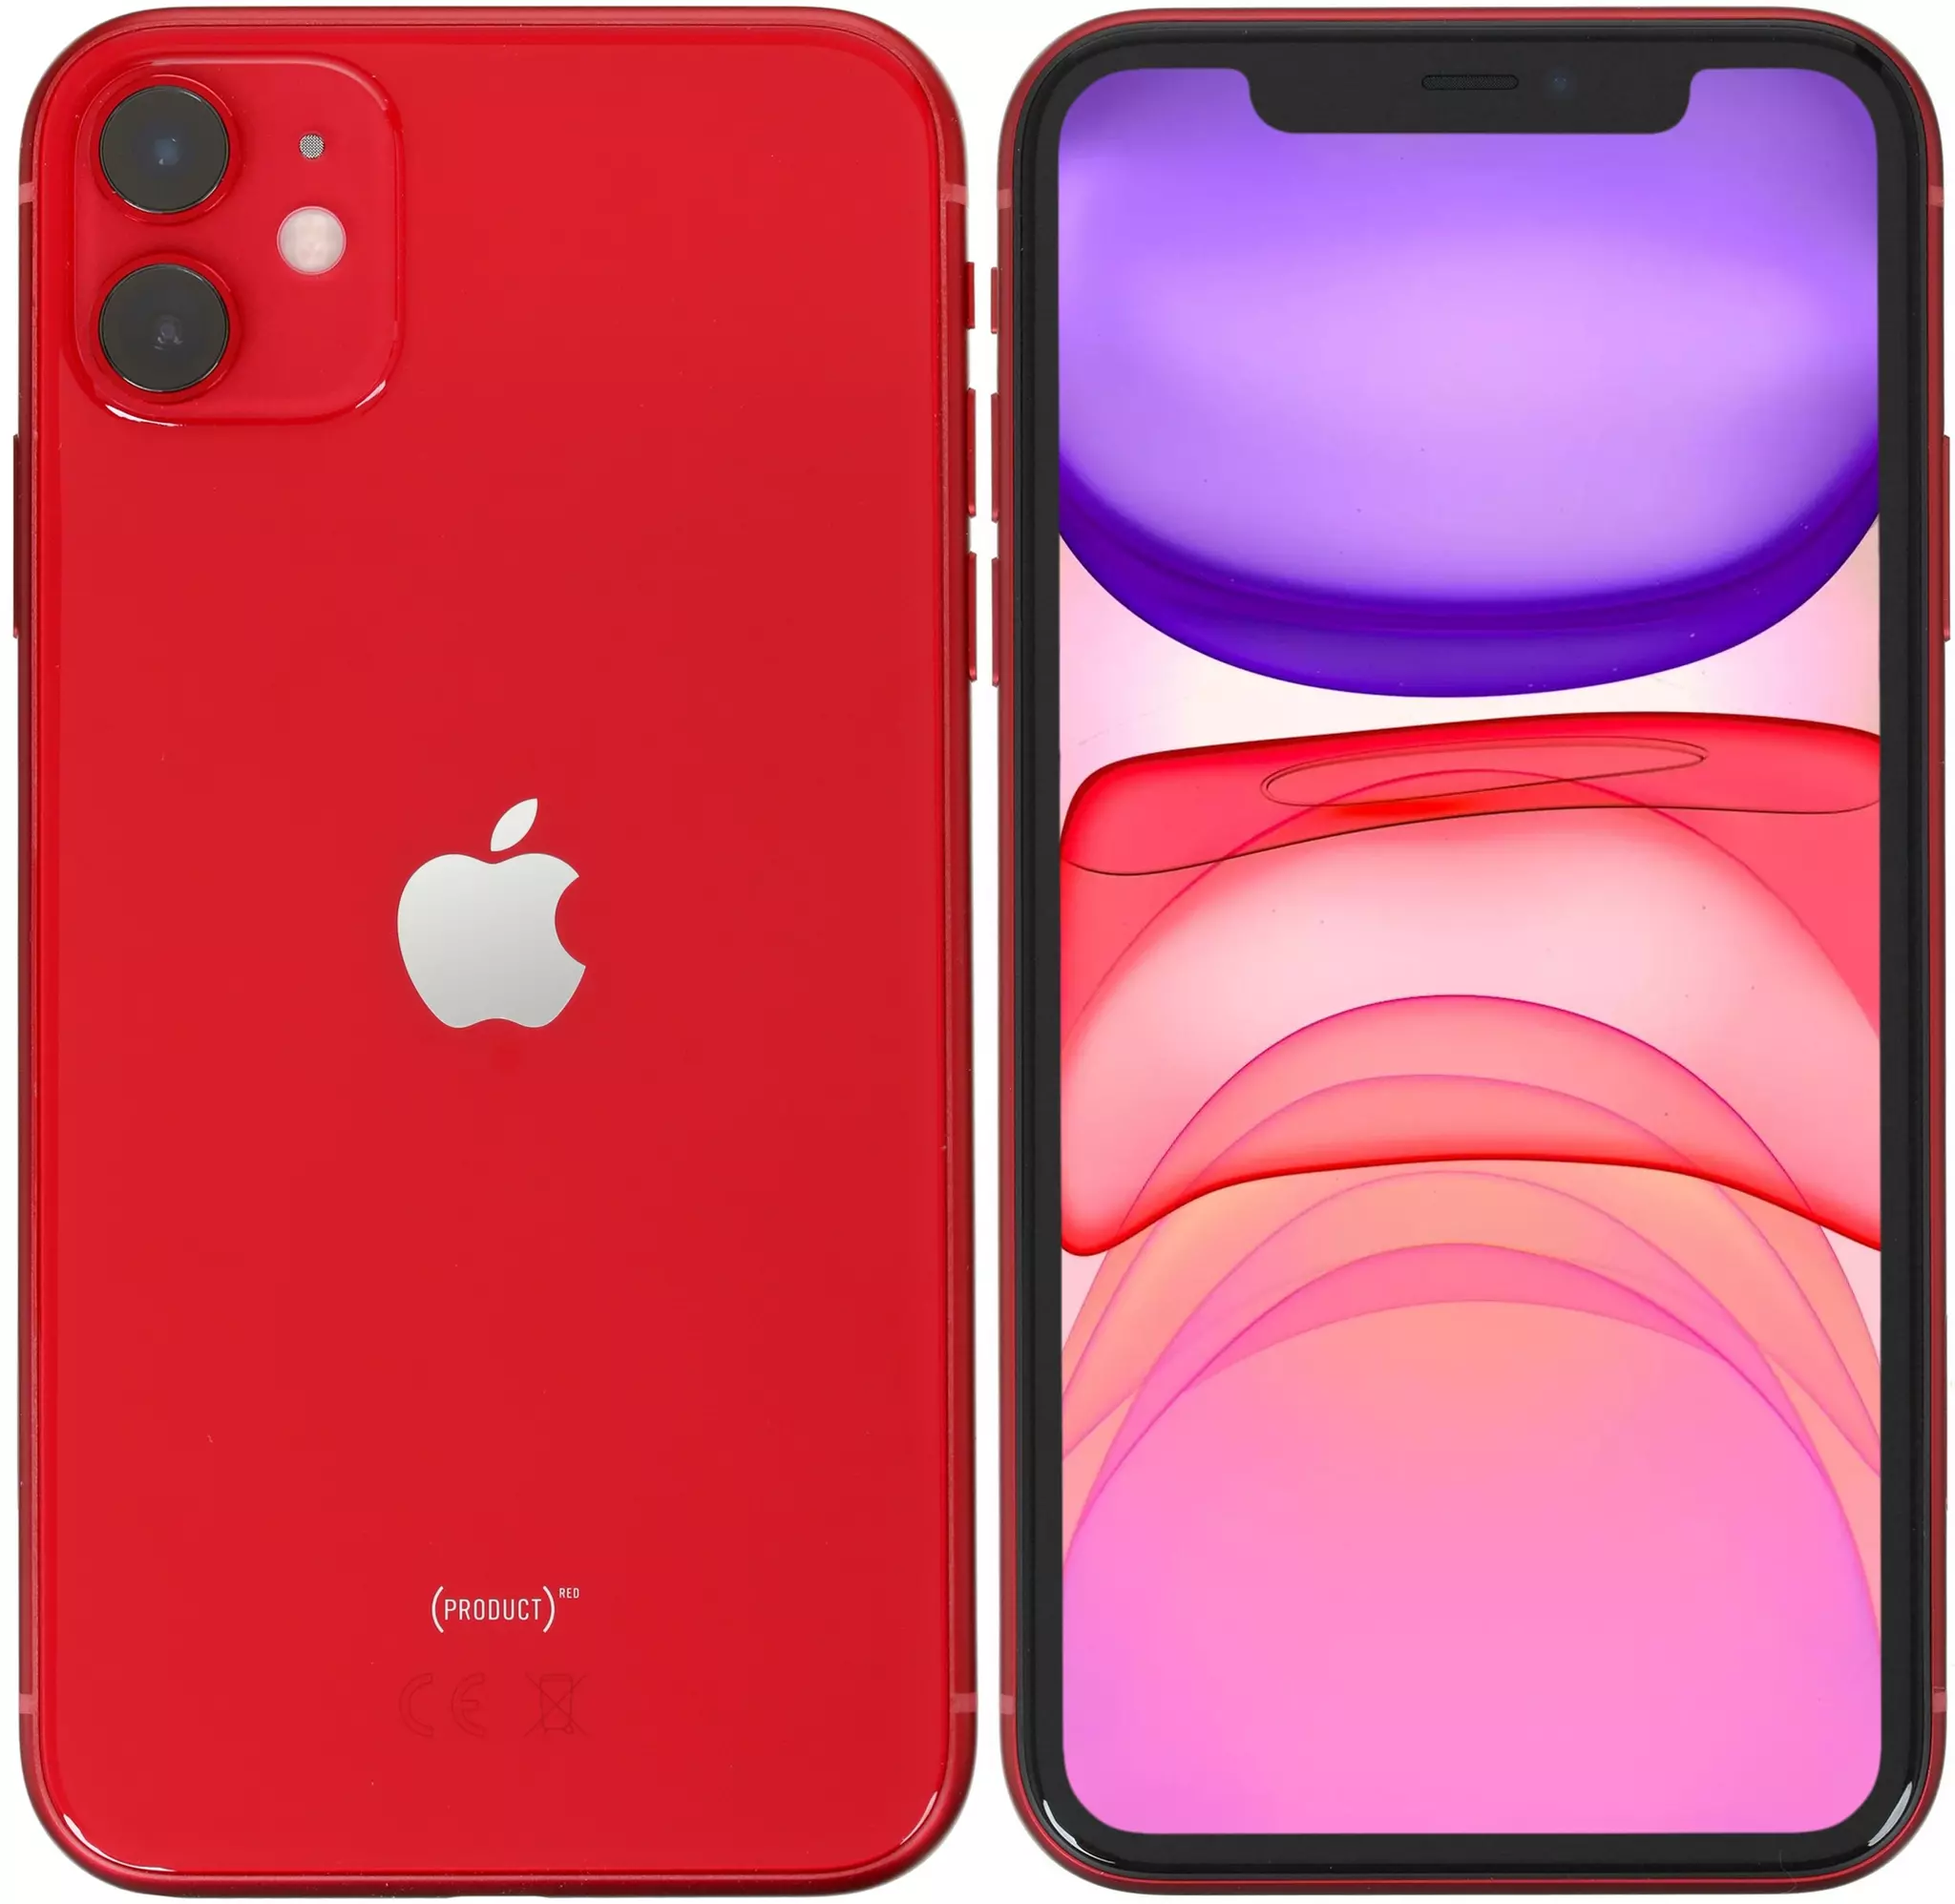 Красный телефон айфон. Apple iphone 11 64gb Red. Iphone 11 128gb Red. Apple iphone 11 64gb (product)Red. Apple iphone 11 128 ГБ (product)Red.